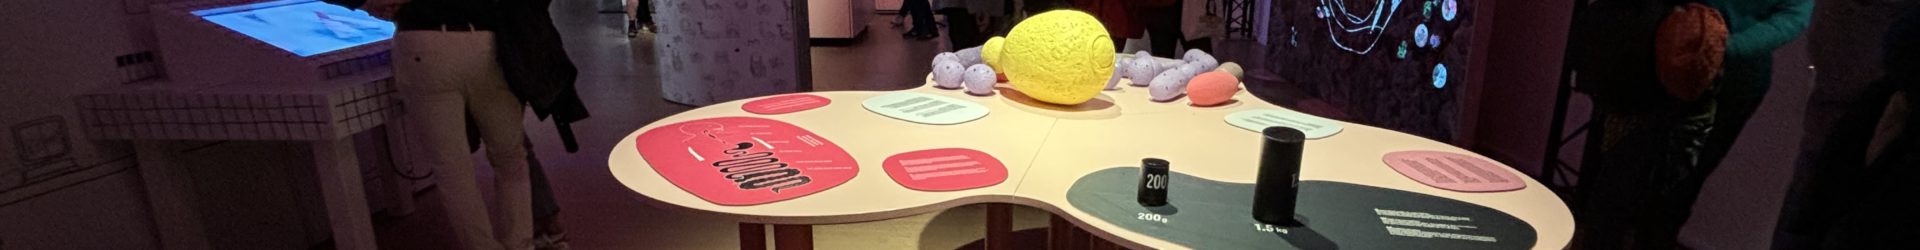 Microbiote au Grand Hôtel Dieu : l’expo qui ne manque pas de selles